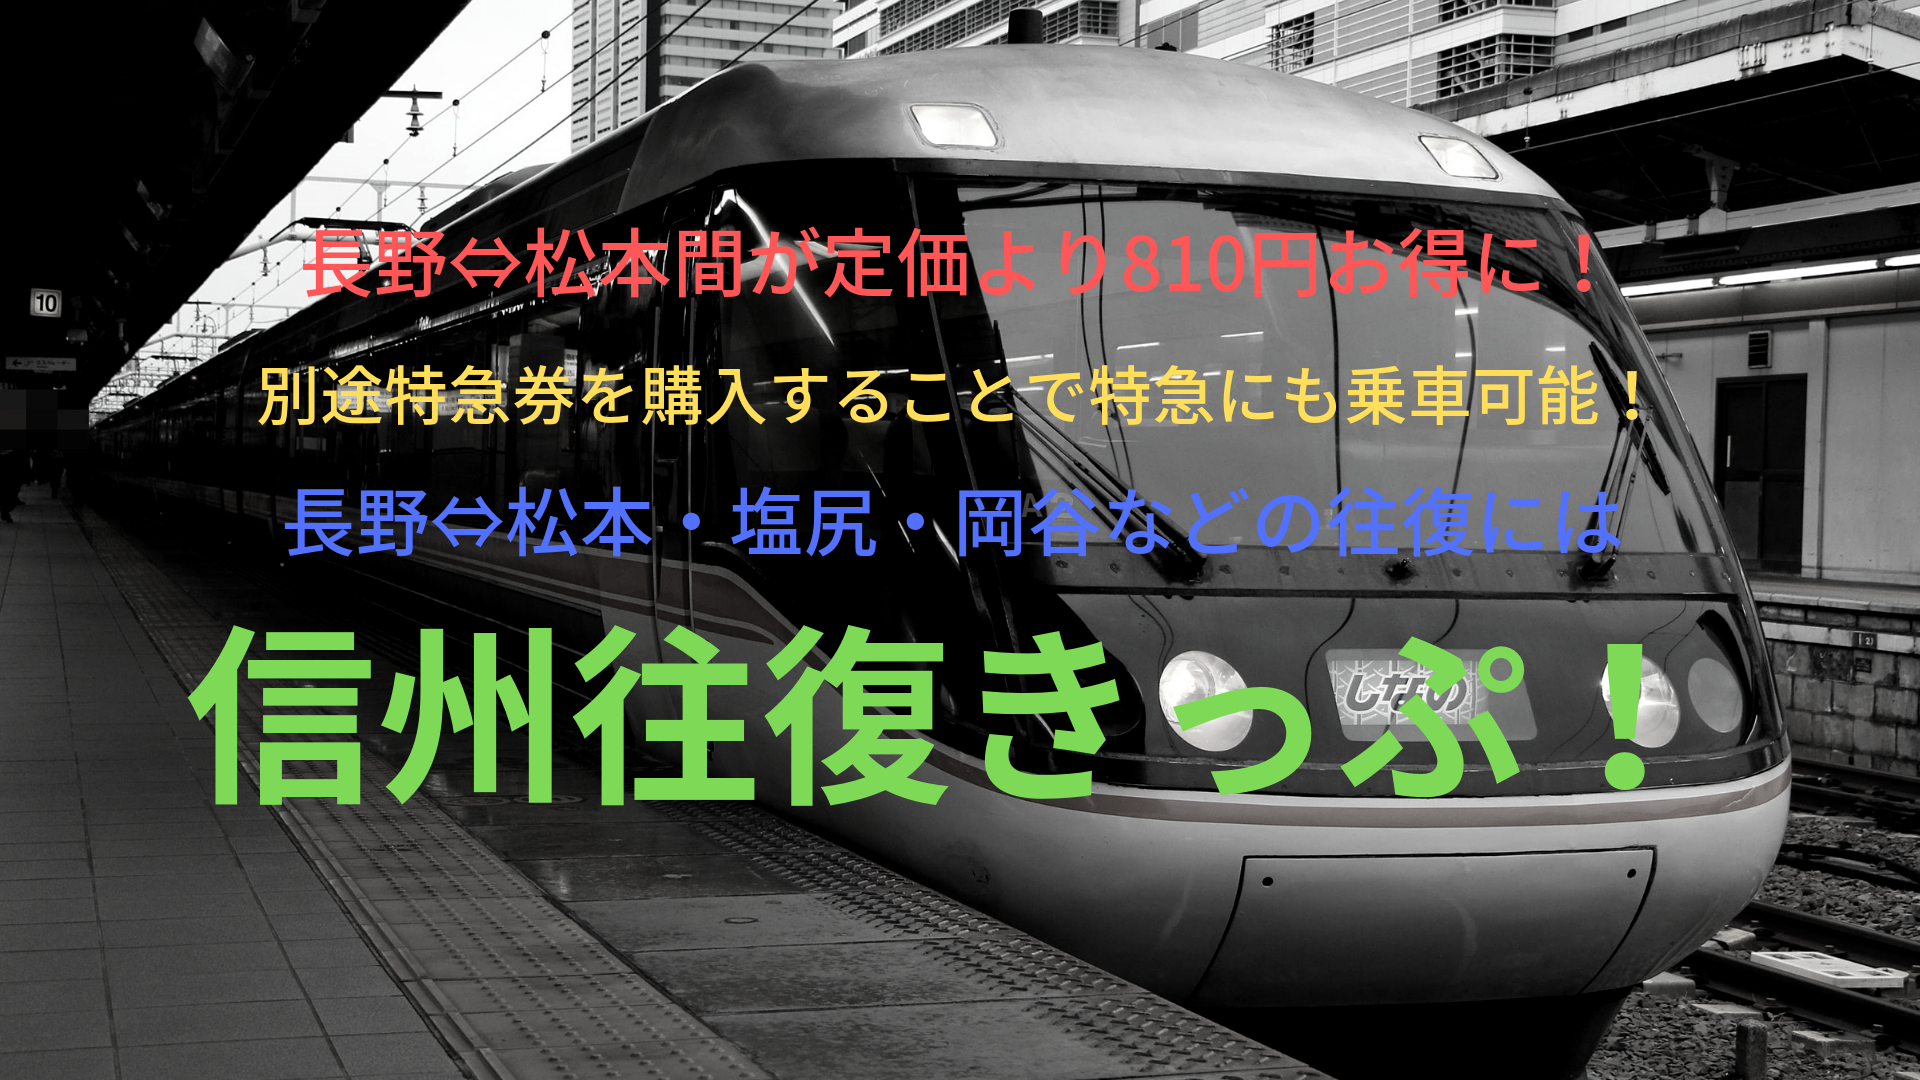 長野 松本が定価より810円お得 往復利用なら信州往復きっぷがお得 Jr ばしたく交通